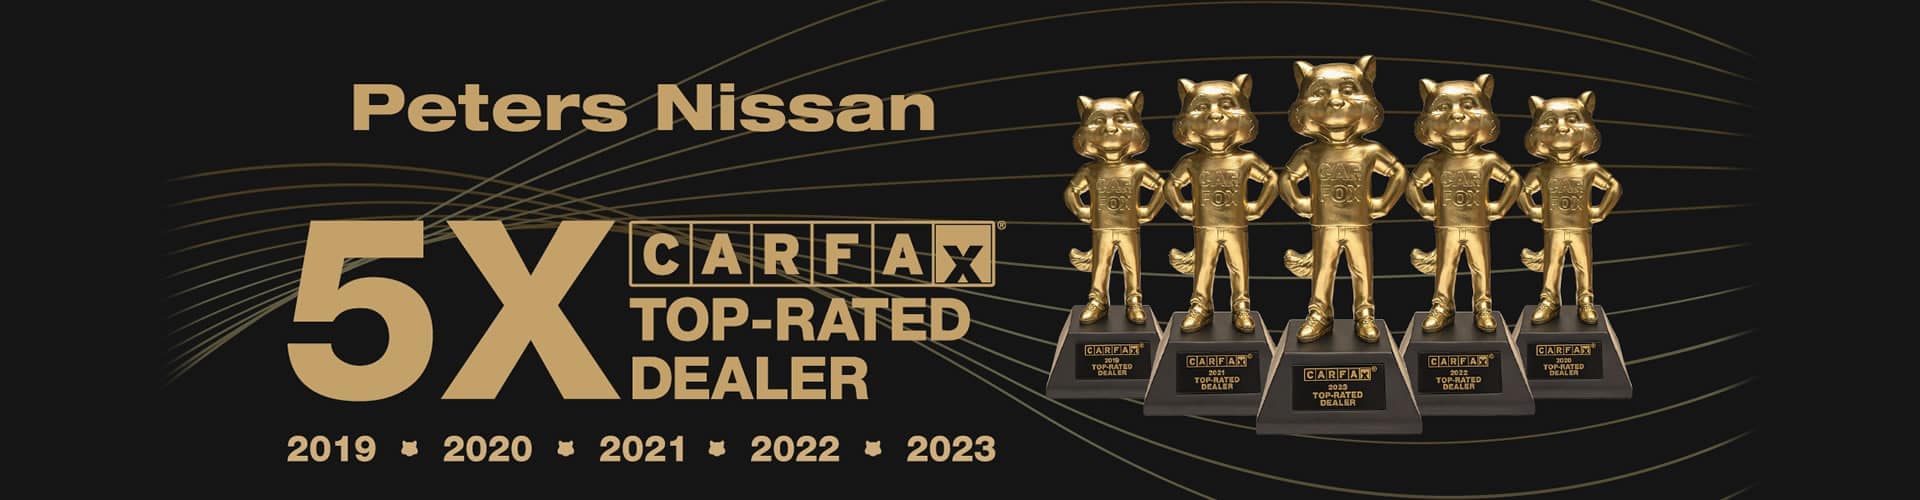 CarFax-Nissan-Website